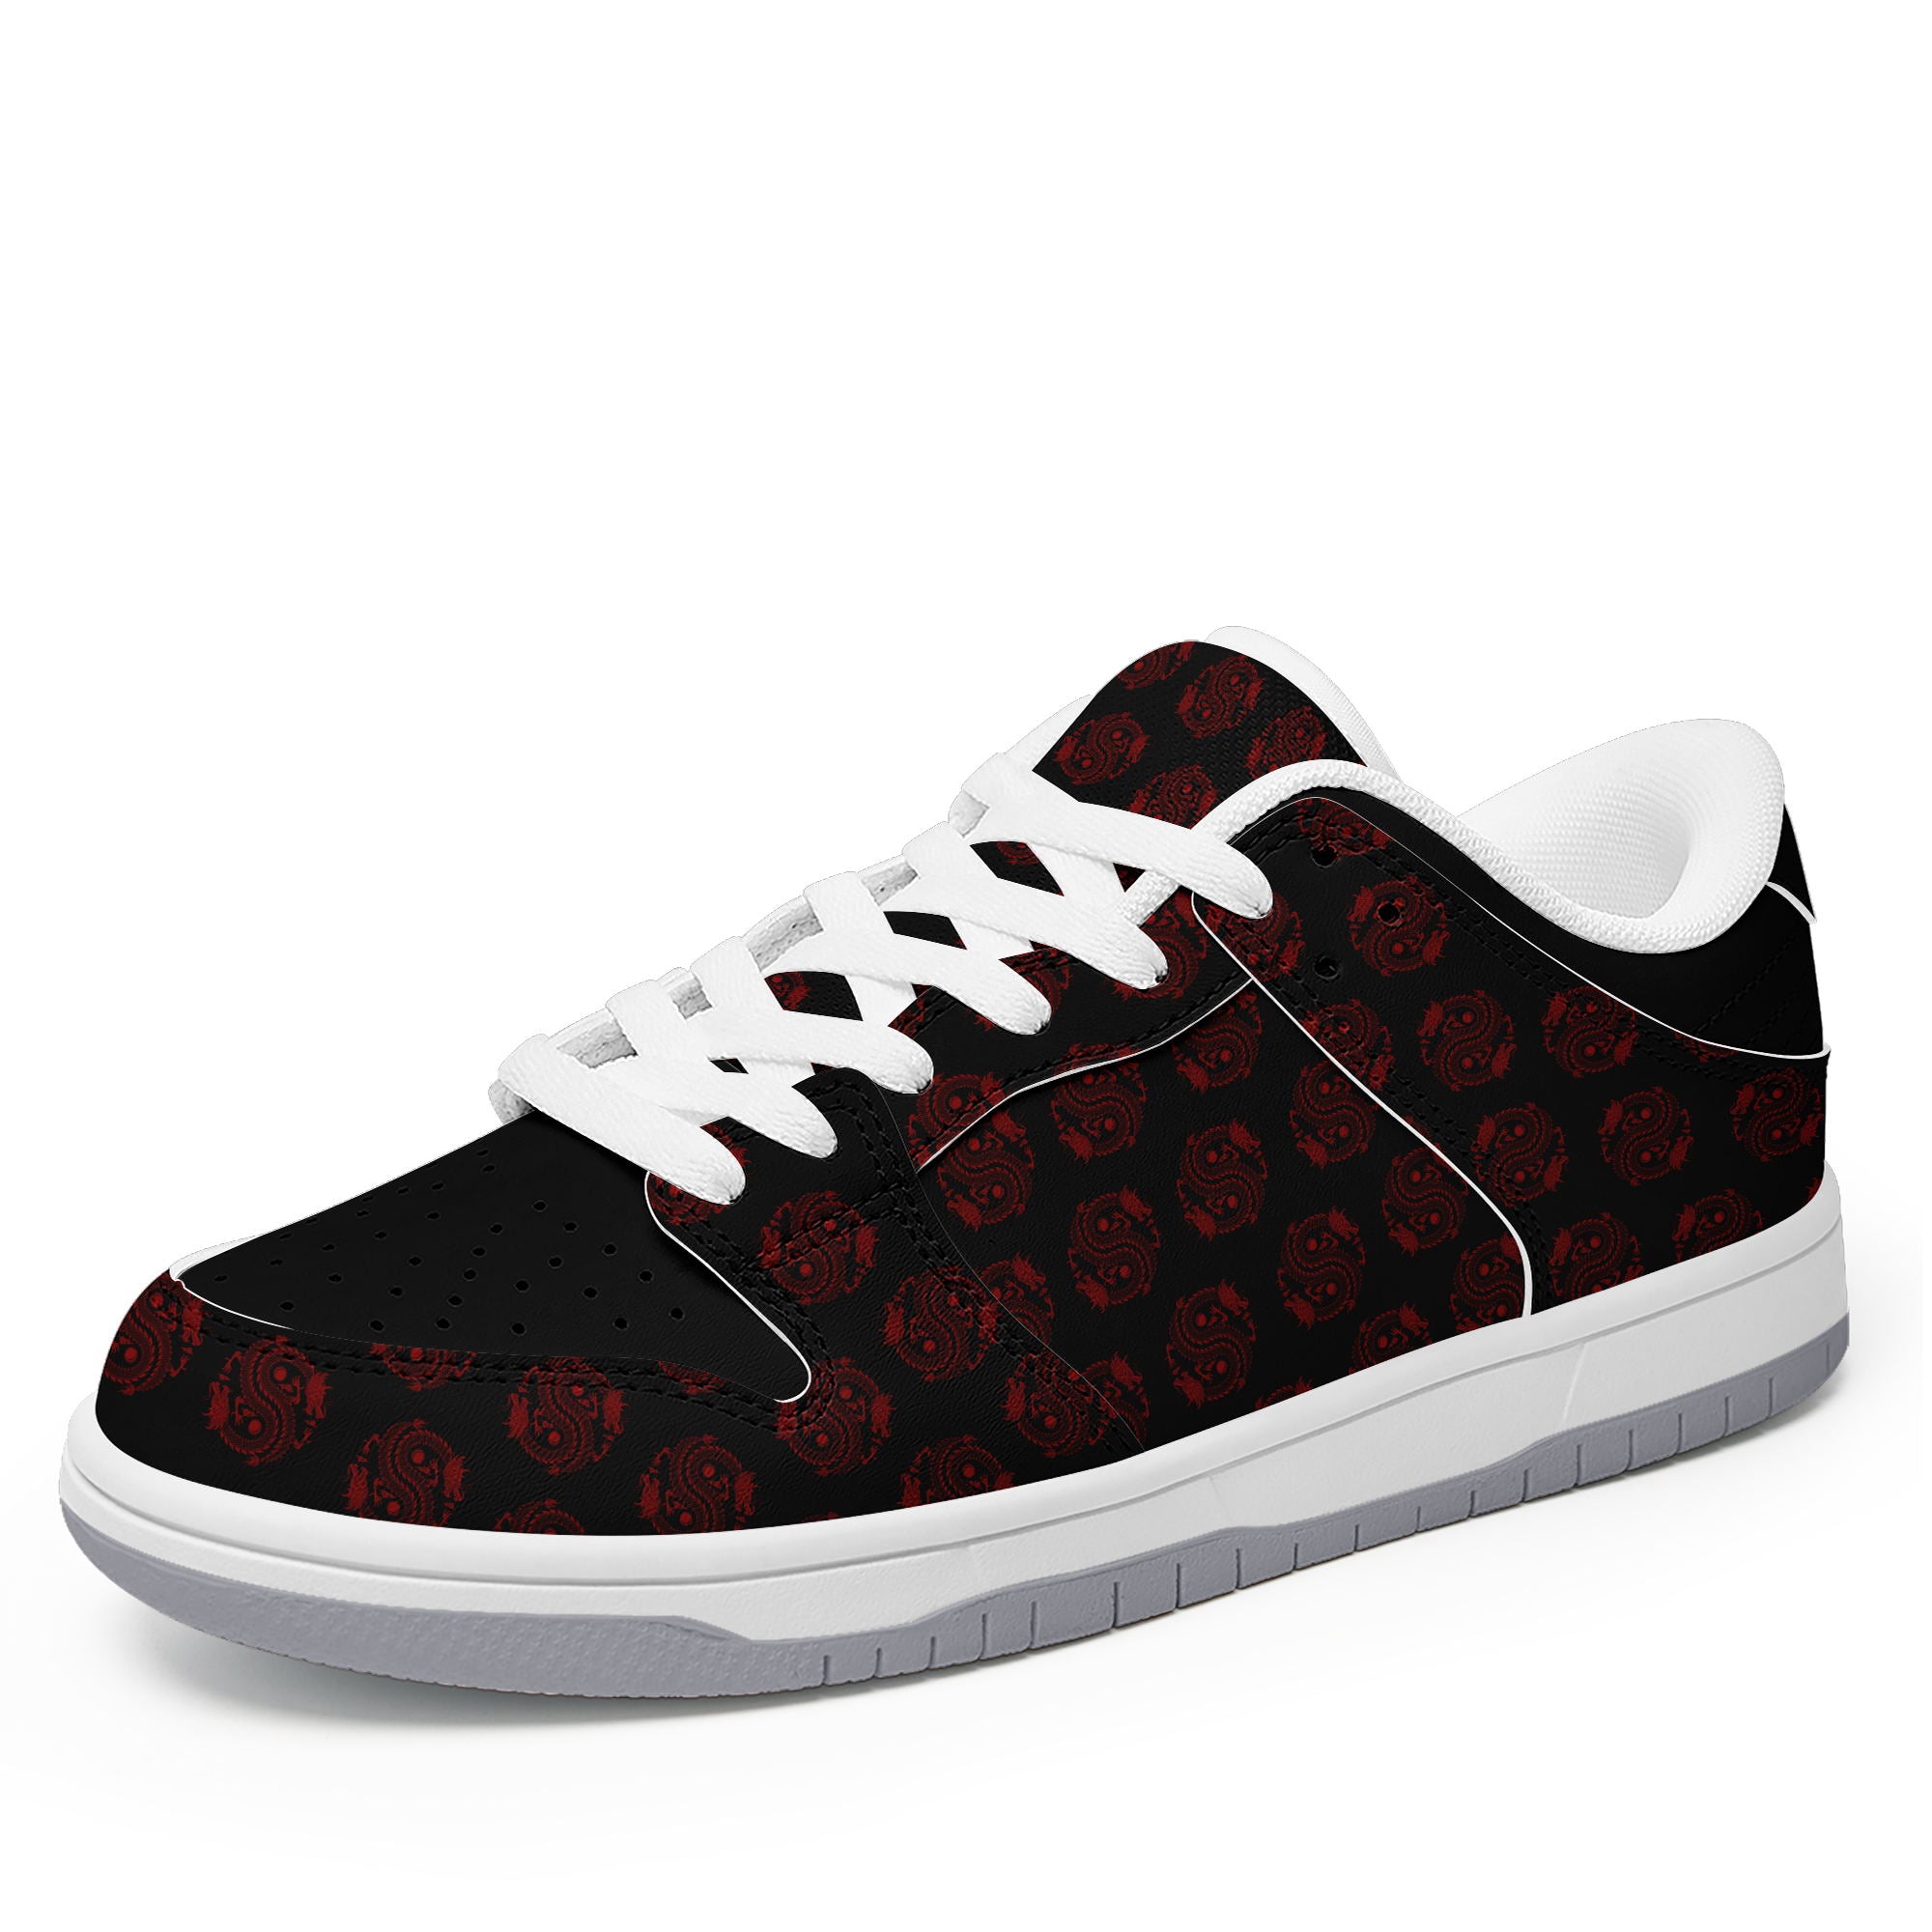 柔性定制打印个性化设计中国龙图腾休闲鞋黑红色白鞋带DK-24025005